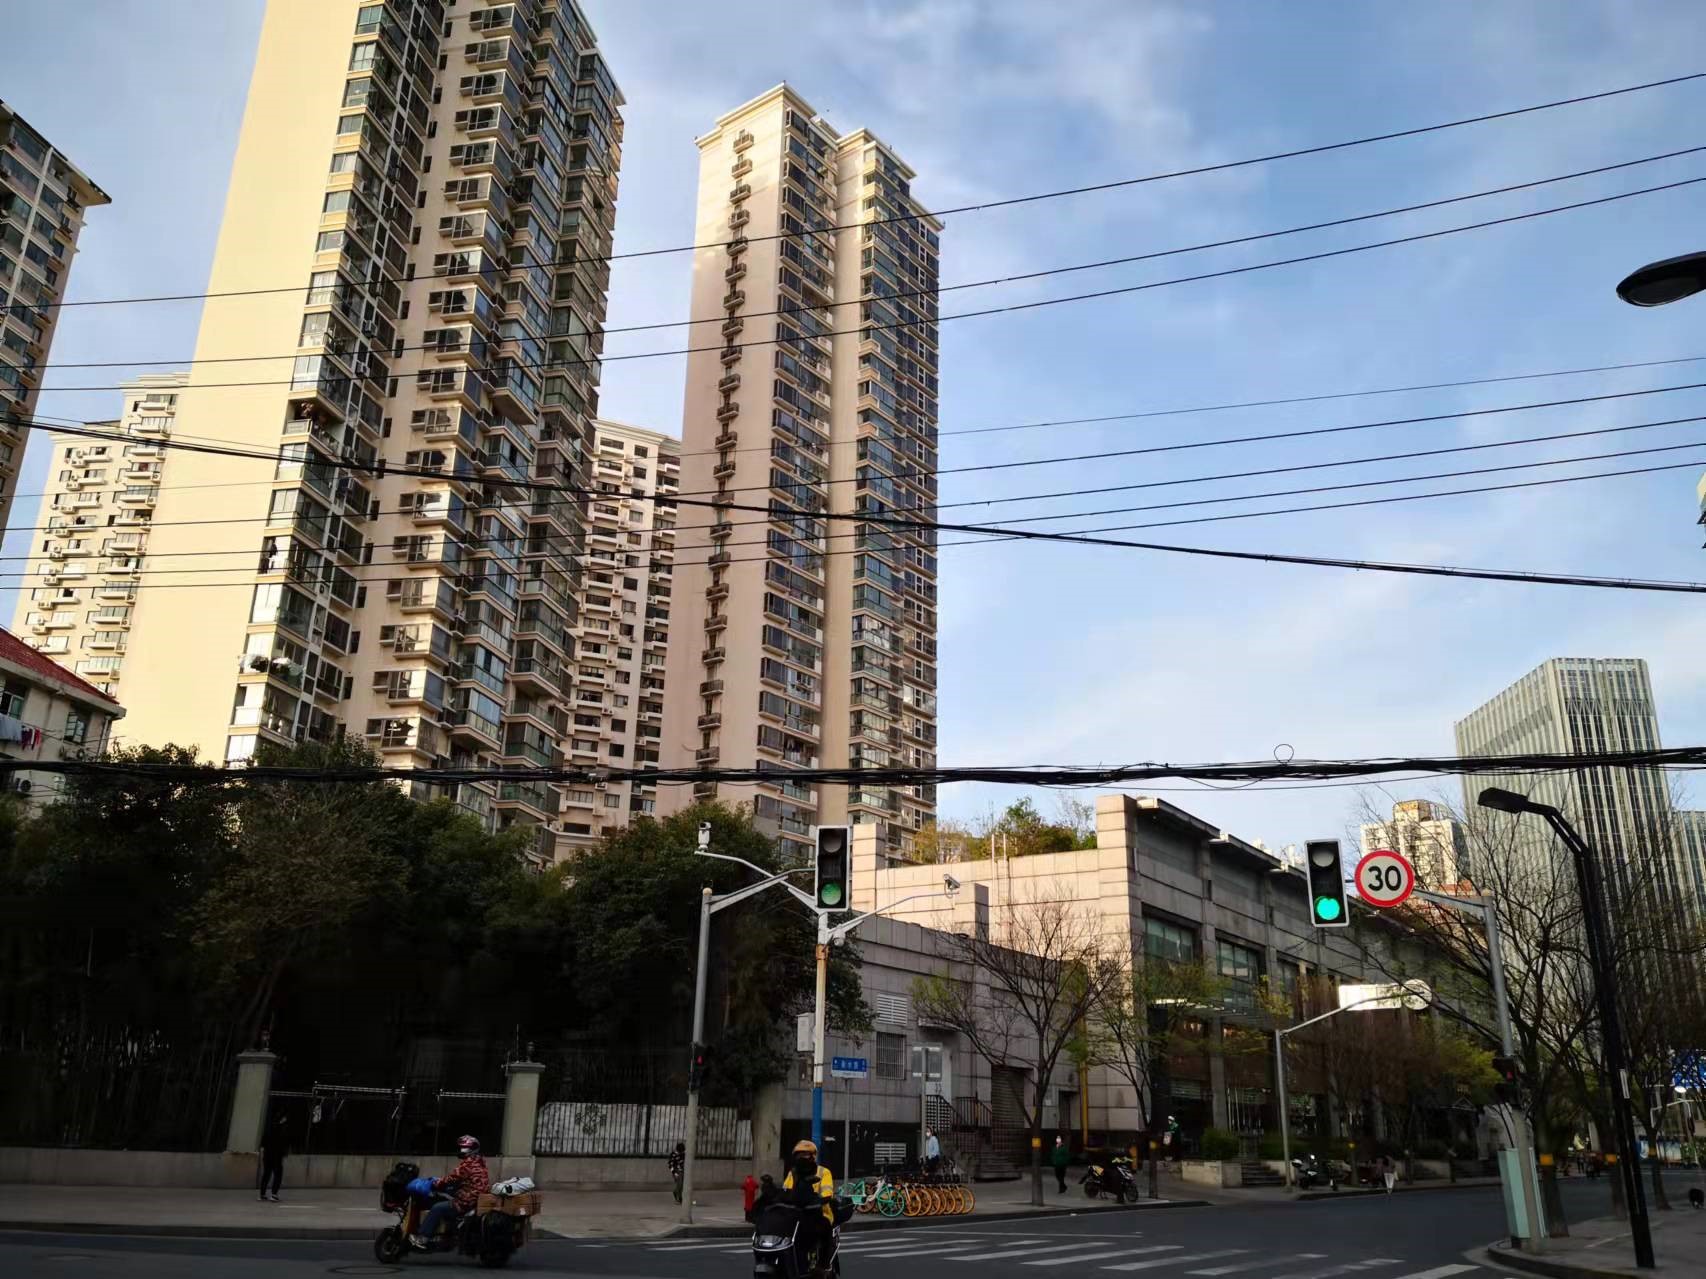 上海四川北路附近与住宅楼通过绿化相隔离，不设背街的商业小楼，楼顶甚至种植绿植让通常设于屋顶的一系列基础设施从居民的视线中消失。有趣的是这家餐馆将二楼面向街道一面设计成为排风口，并用栅格做以视觉阻挡。由于排风口位置很高且经营粤菜，行走在主街上的人基本感受不到油烟的困扰。赵忞 图